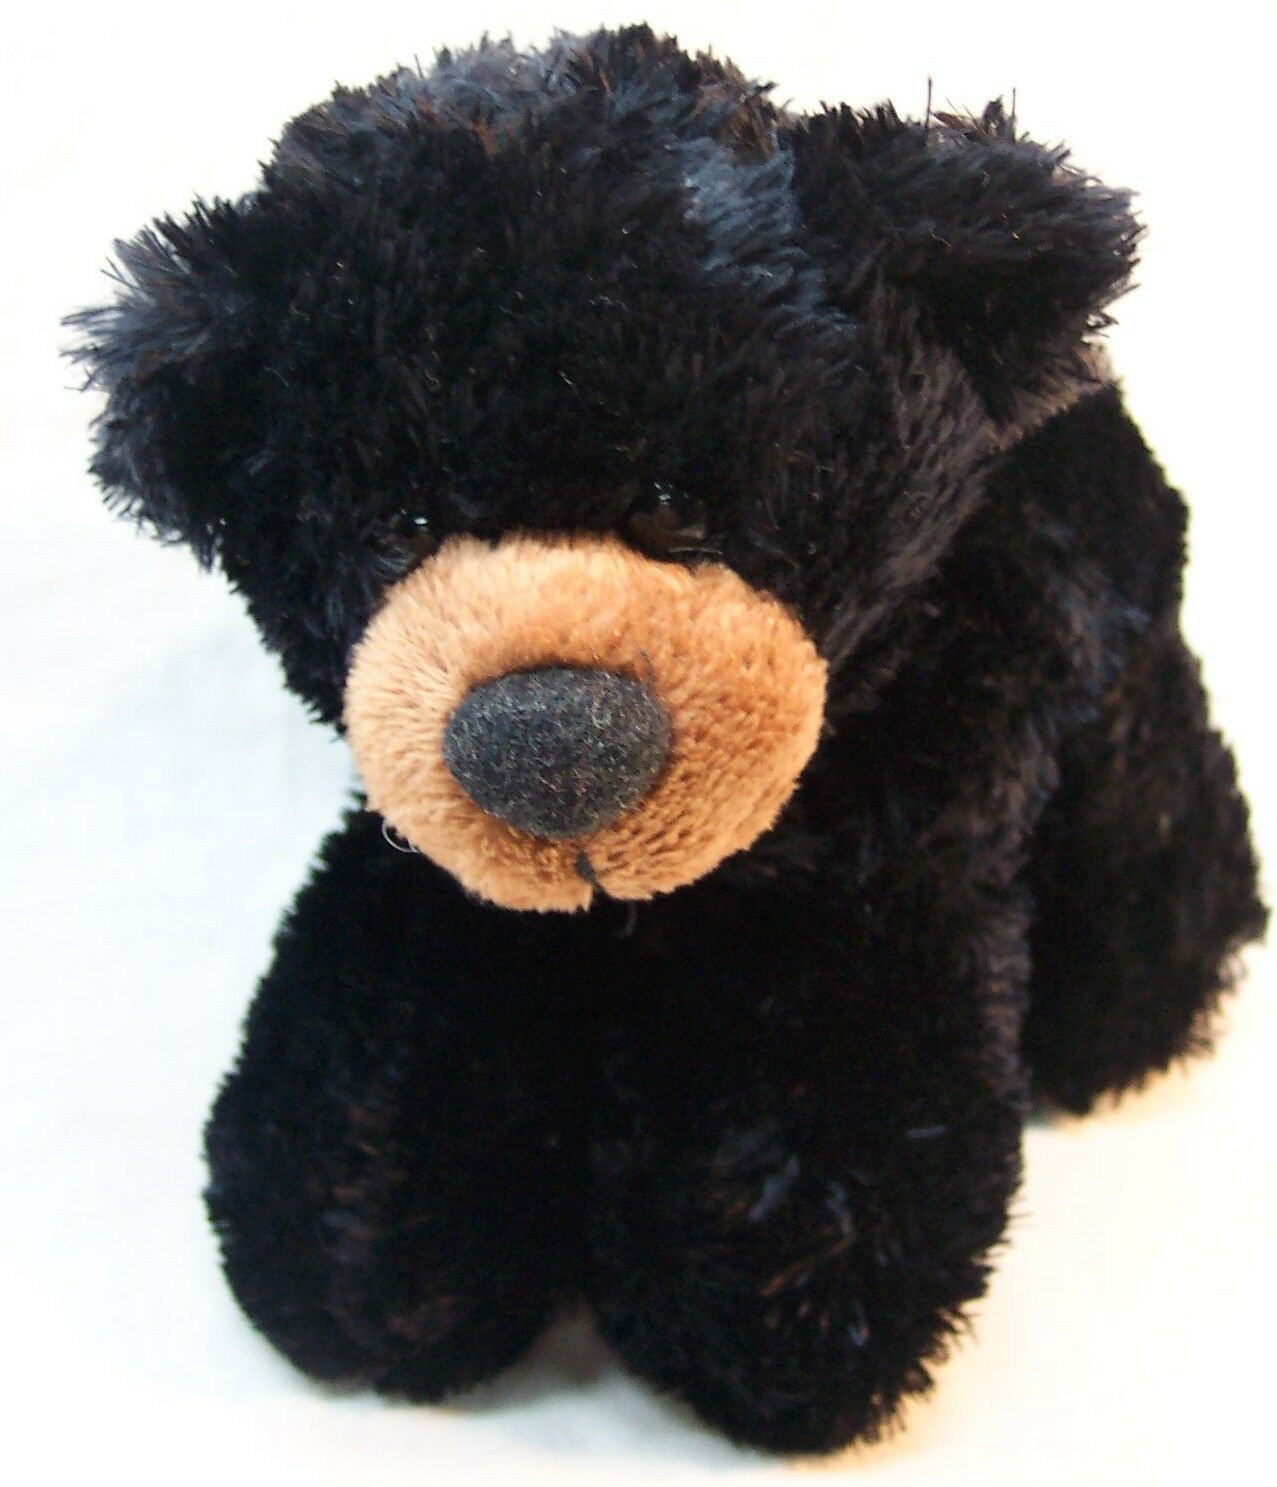 Aurora SOFT BLACK TEDDY BEAR 6" Plush STUFFED ANIMAL Toy - $14.85